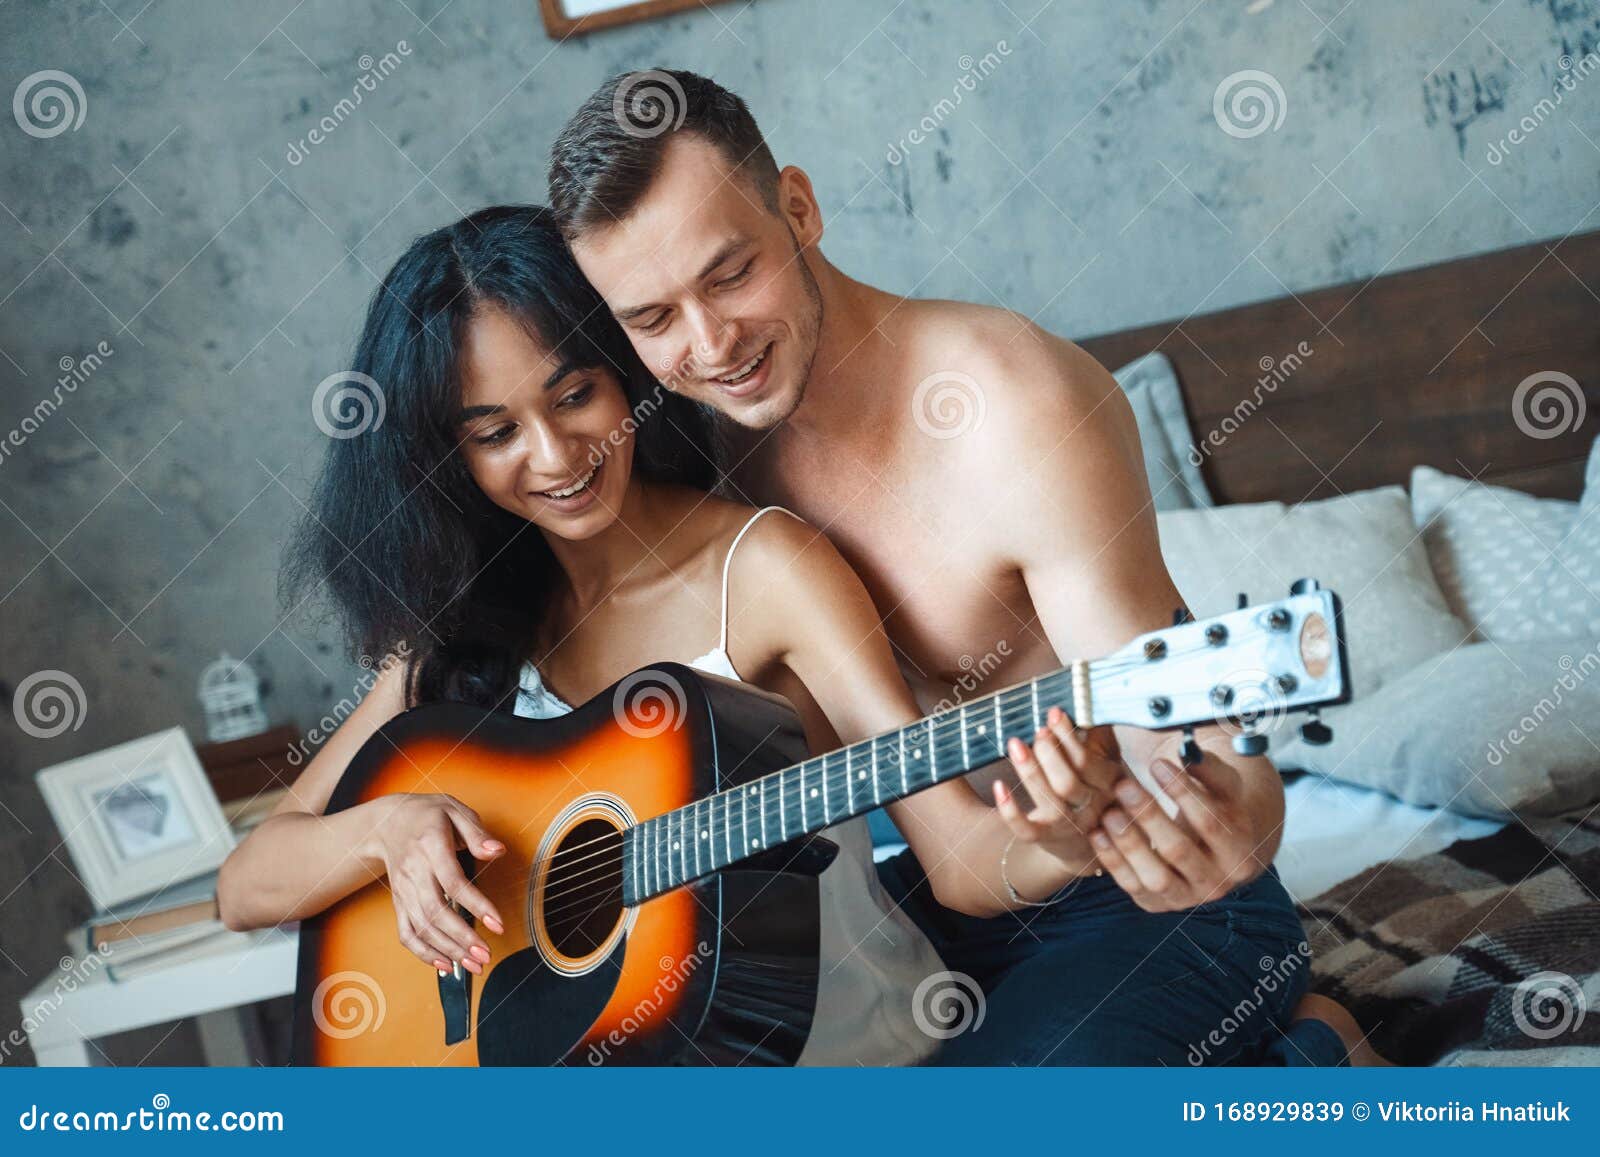 https://thumbs.dreamstime.com/z/pareja-de-razas-mixtas-joven-ense%C3%B1ando-una-mujer-que-toca-la-guitarra-sentada-en-cama-cantando-feliz-mixta-novio-novia-tocando-168929839.jpg